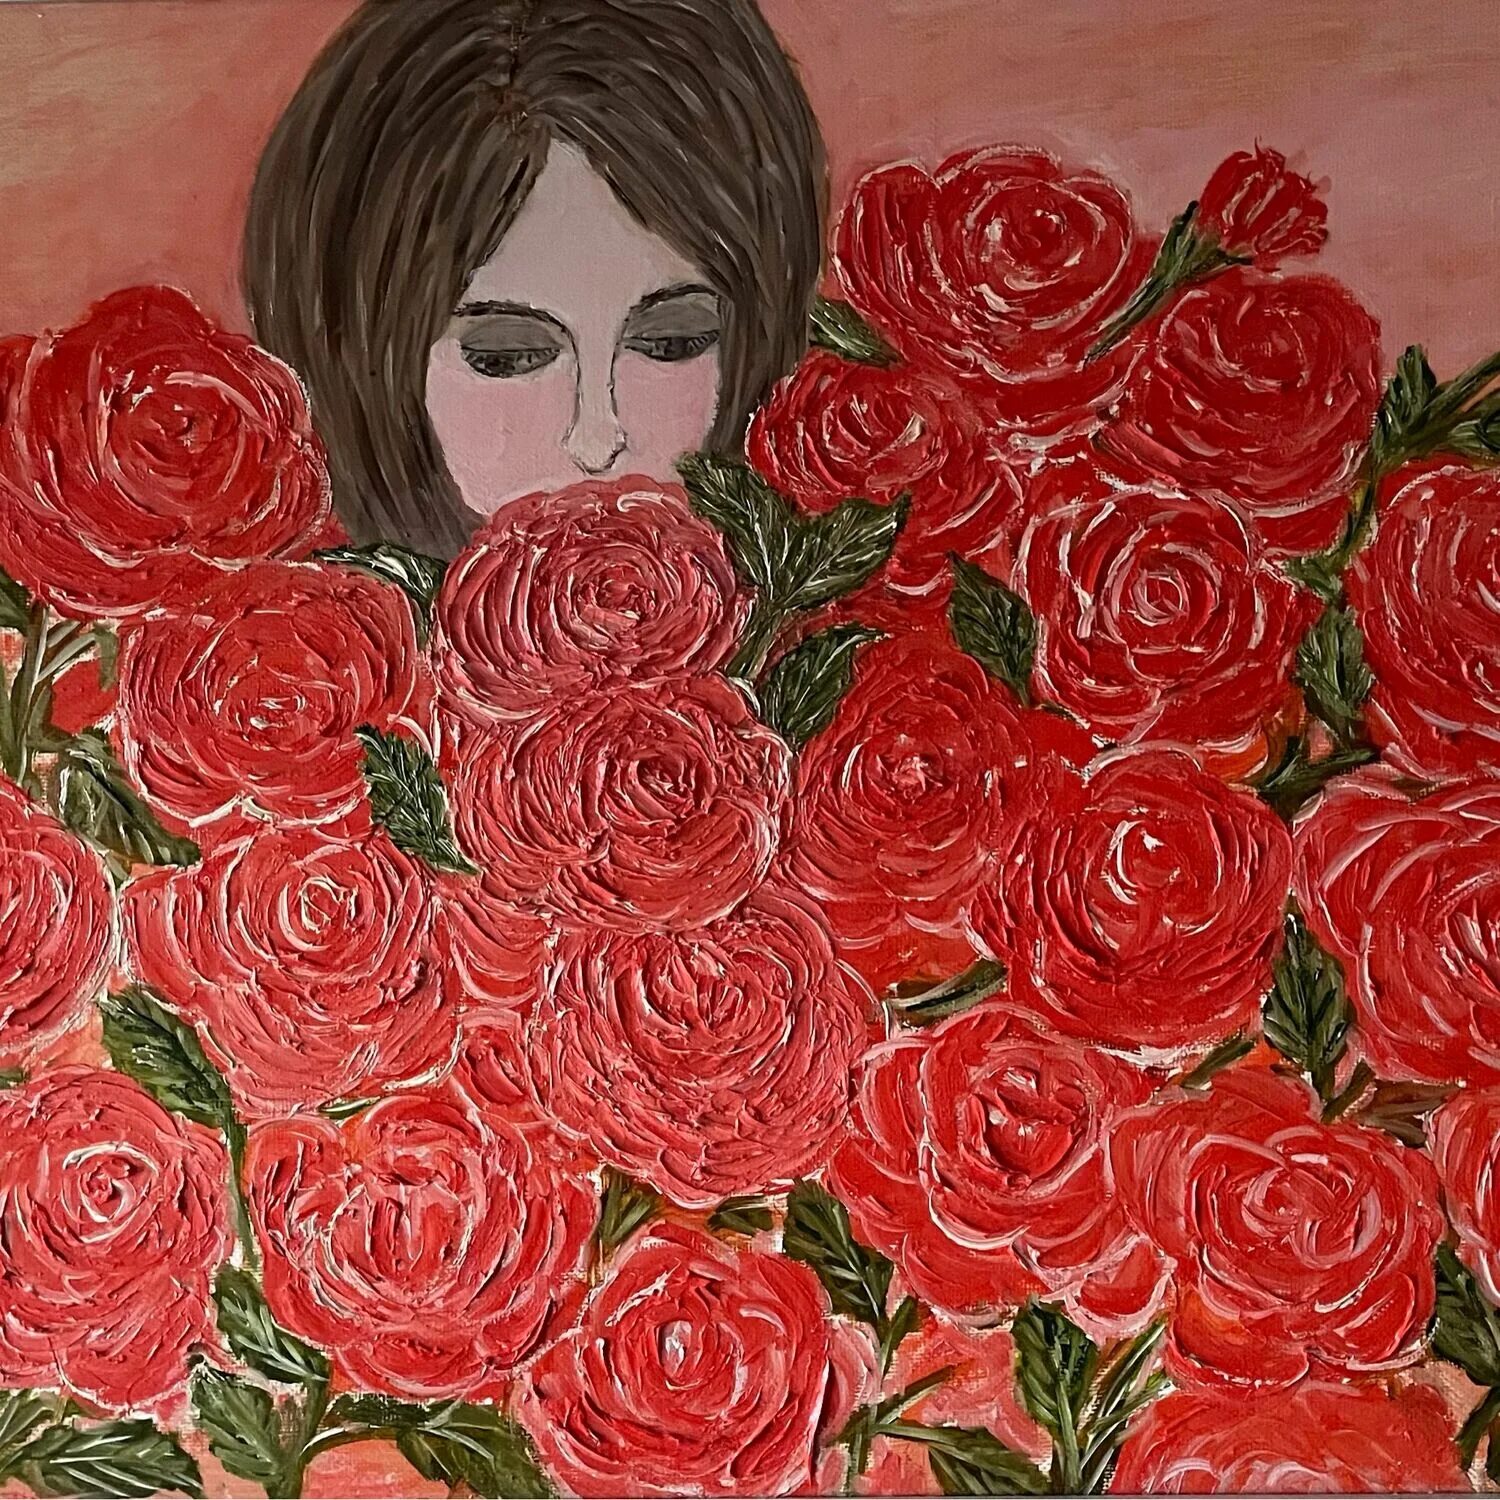 Миллион алых роз кто автор. Миллион алых роз картина. Милион алых роз картина. Картина маслом на холсте букет алых роз. Девушка в поле алых роз рисунок.